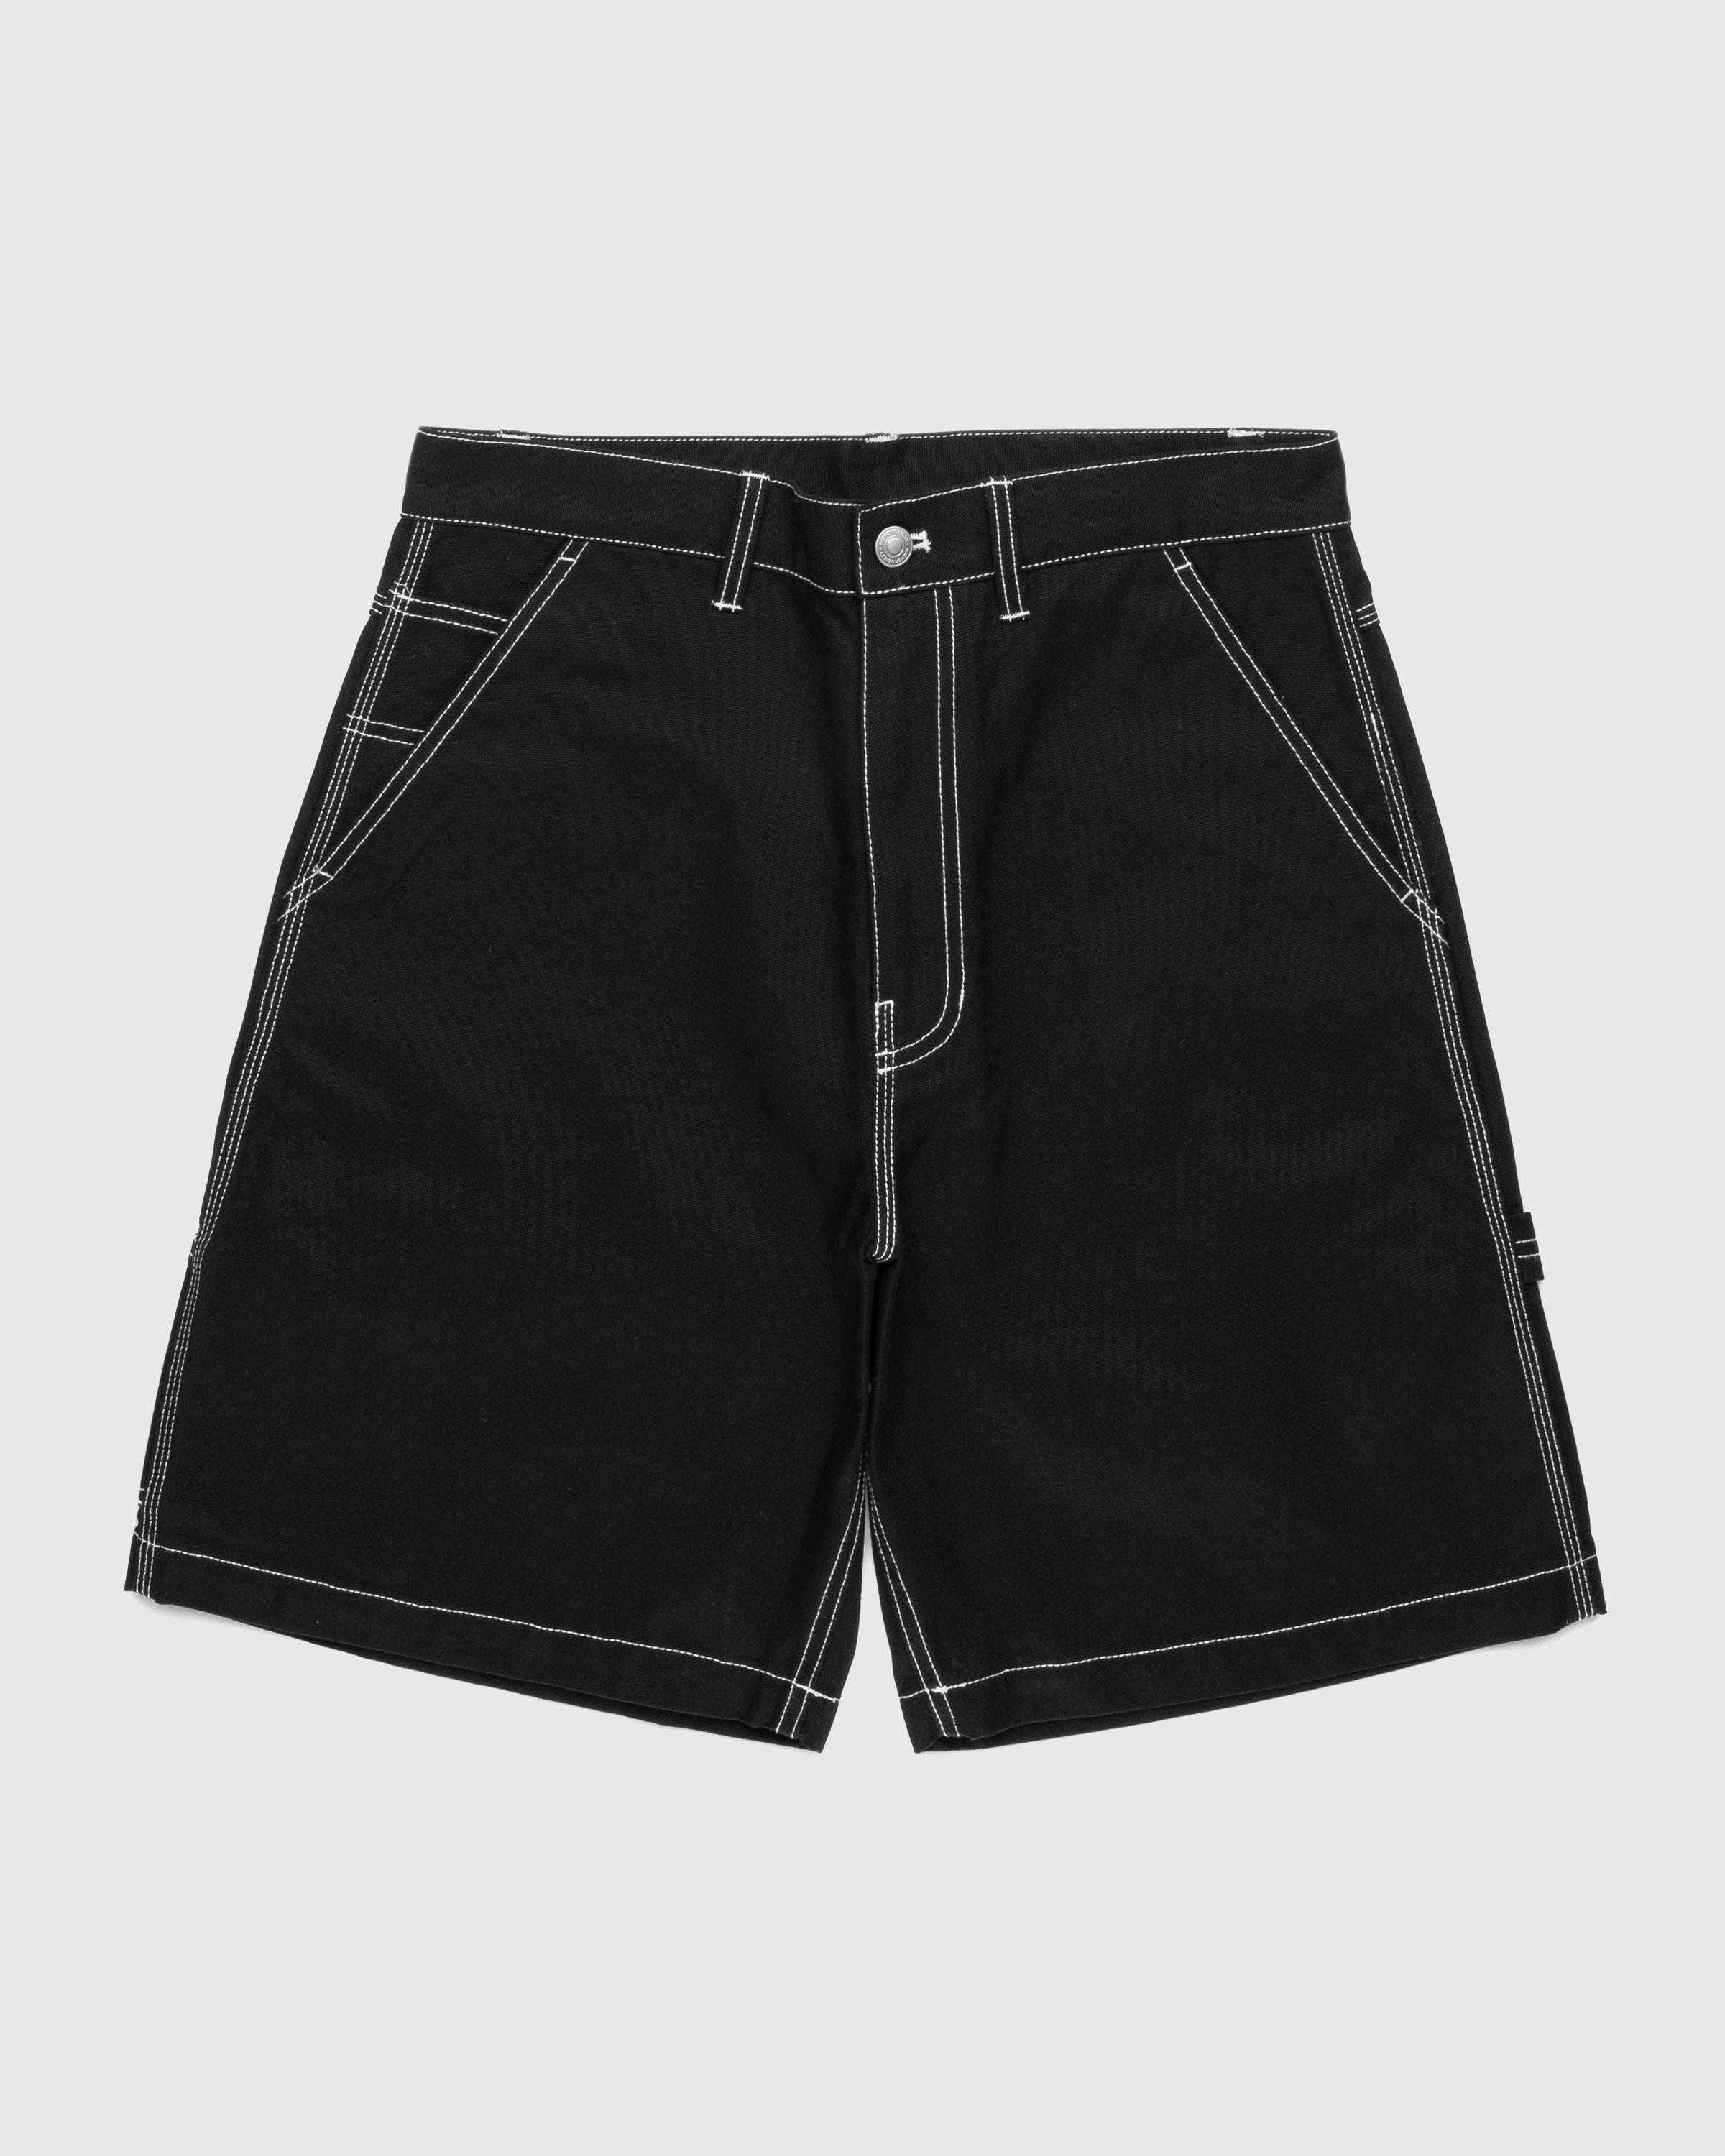 Highsnobiety - Carpenter Shorts Black - Clothing - Black - Image 1